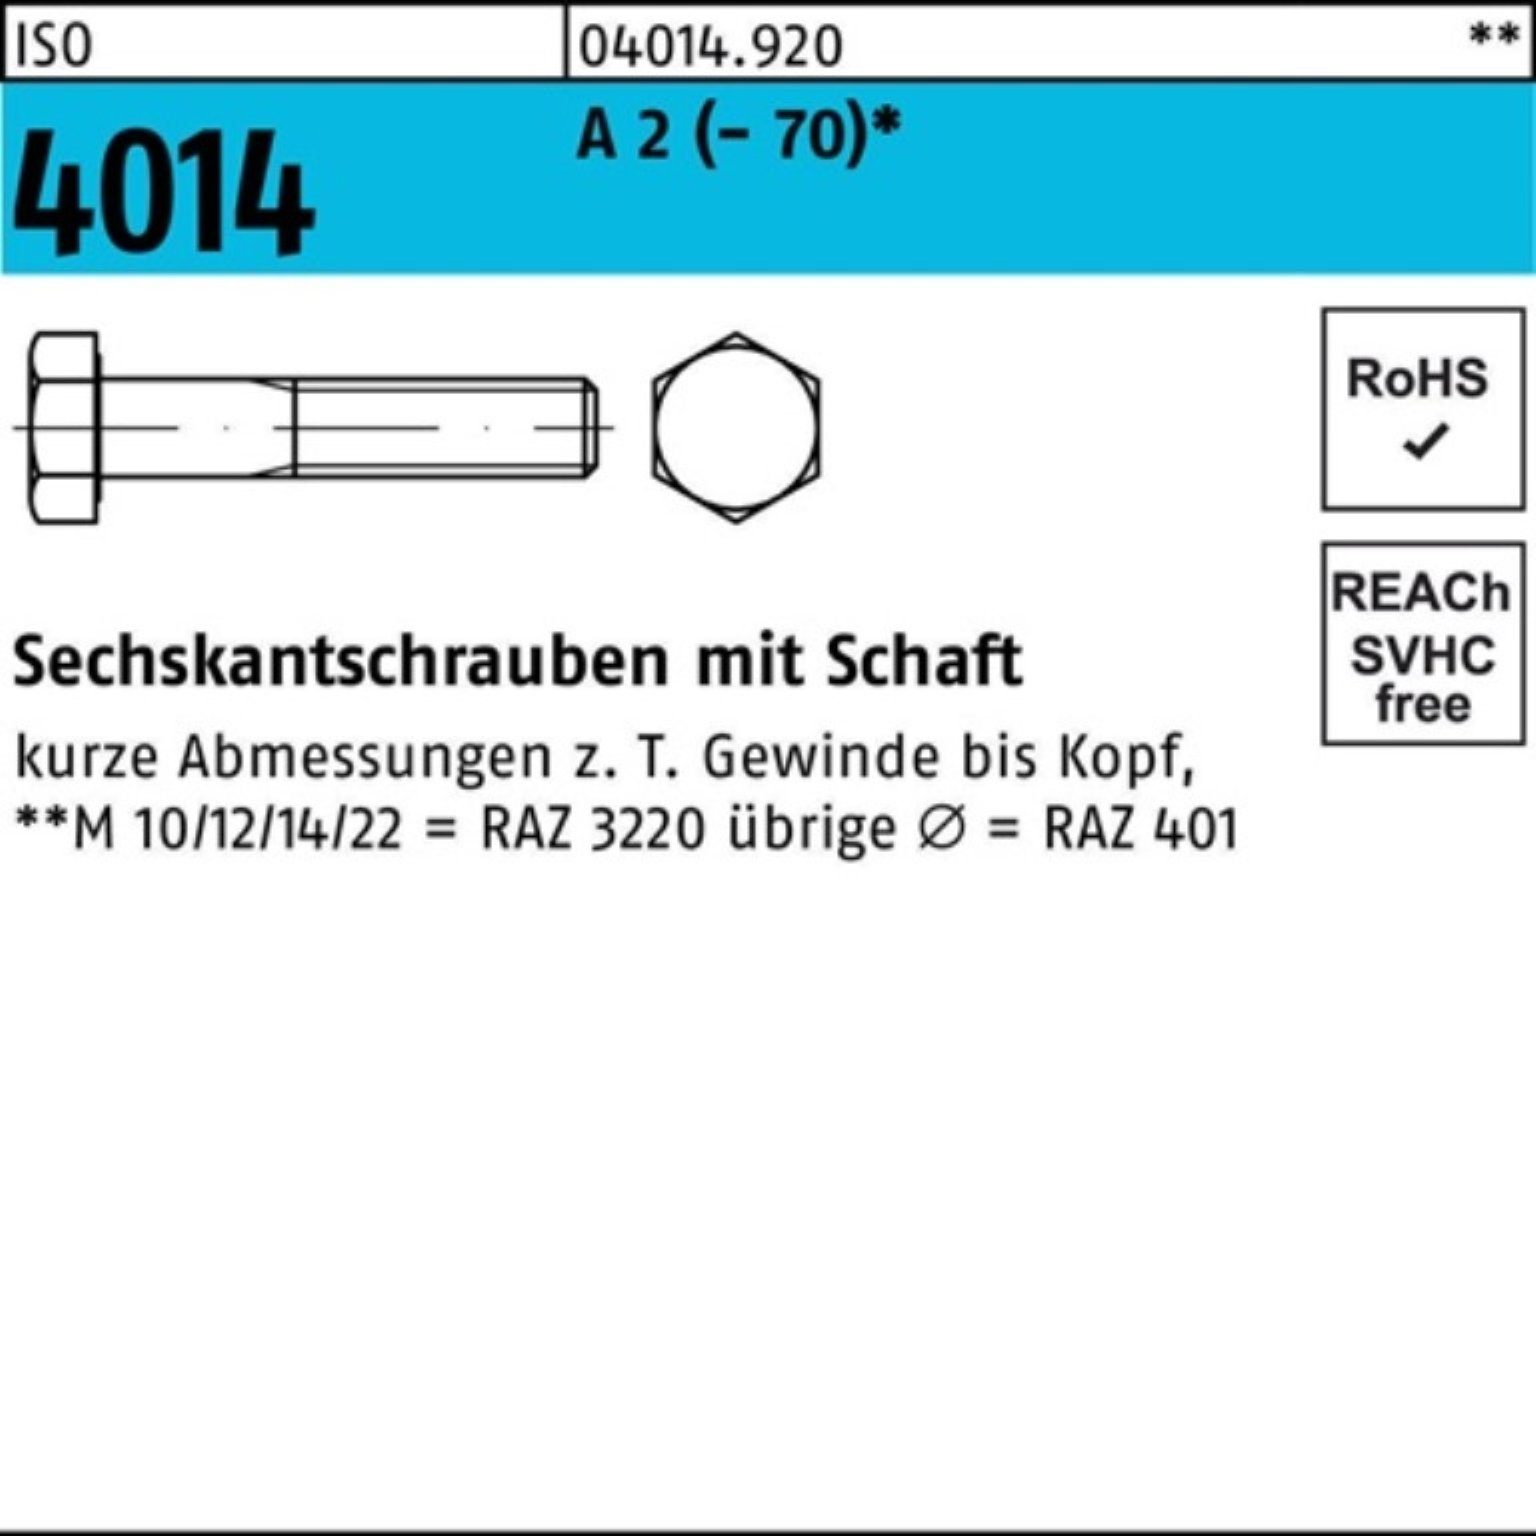 Pack Sechskantschraube 2 ISO 4014 A Sechskantschraube Bufab 230 1 100er M20x Schaft (70) St